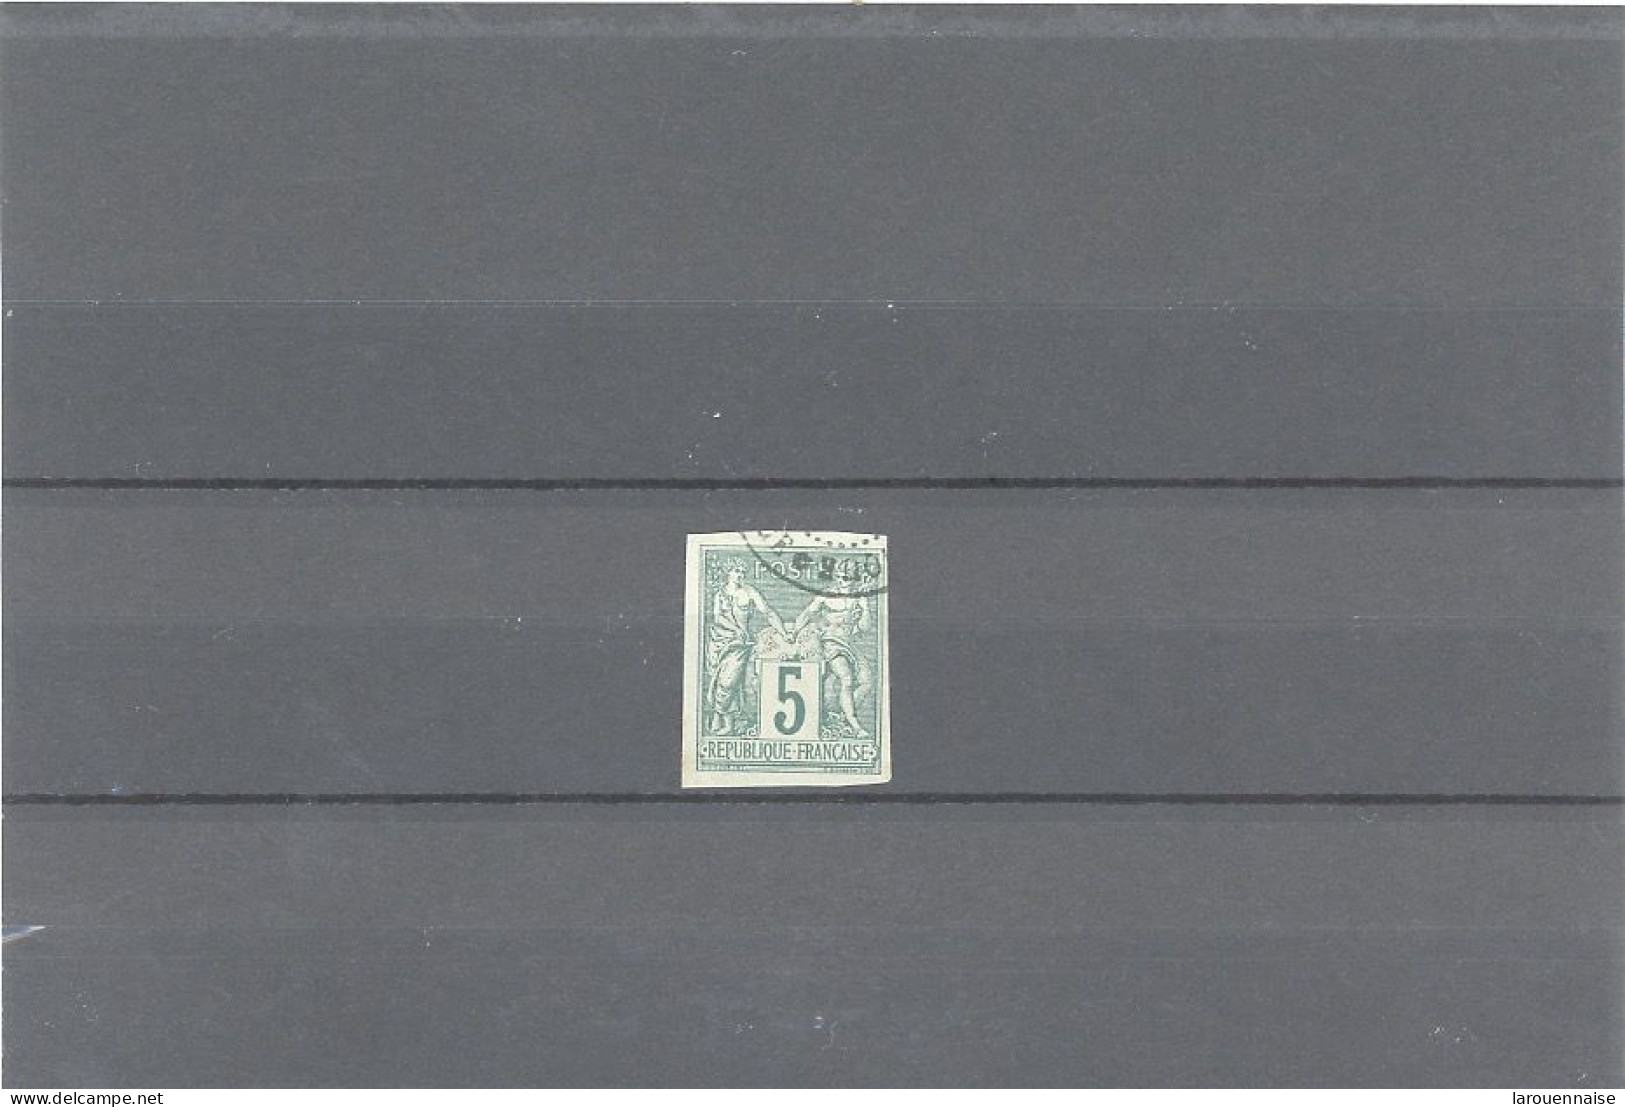 MARTINIQUE-COLONIES GÉNÉRALES-N°31 TYPE SAGE 5 C VERT -  TTB -Obl .CàD PARTIEL (MARTI)NI) QUE /*(FORT DE FRAN)CE * - Used Stamps